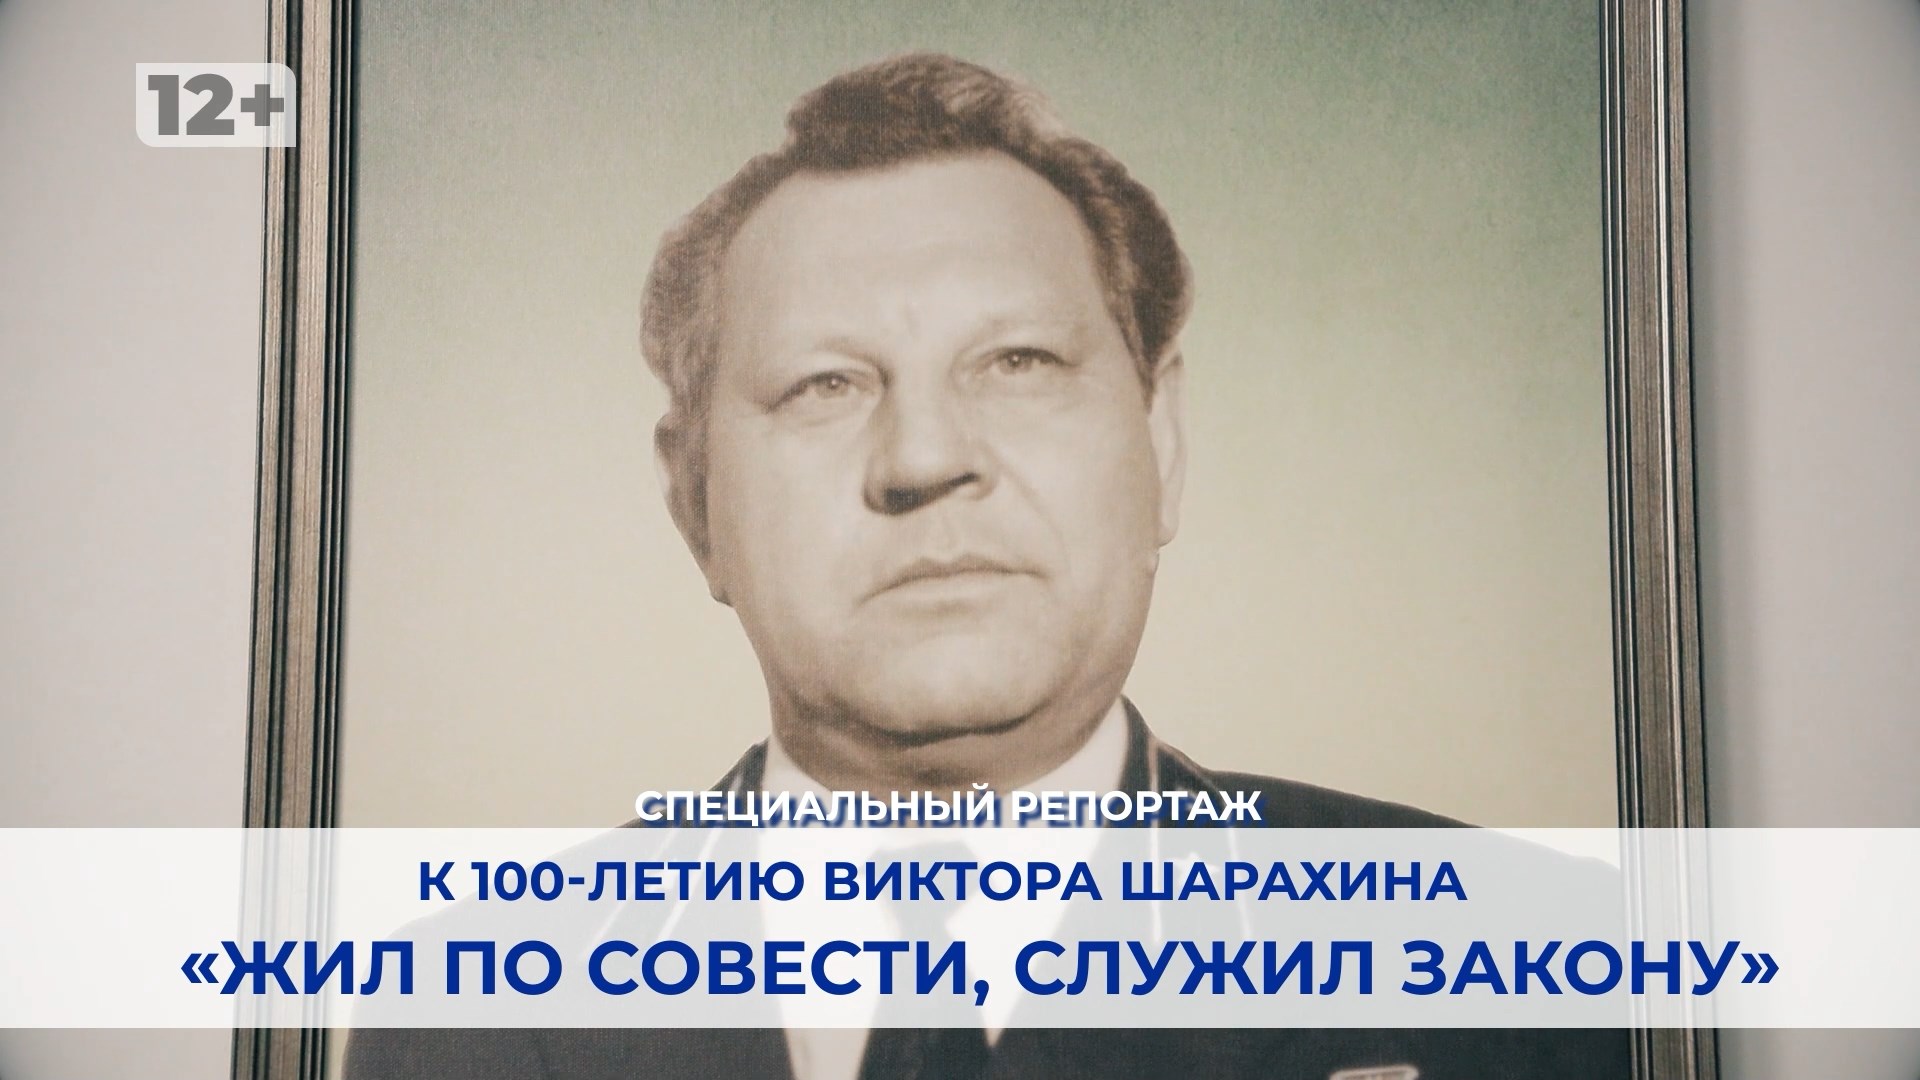 «Жил по совести, служил закону»:  к 100-летию Виктора Шарахина